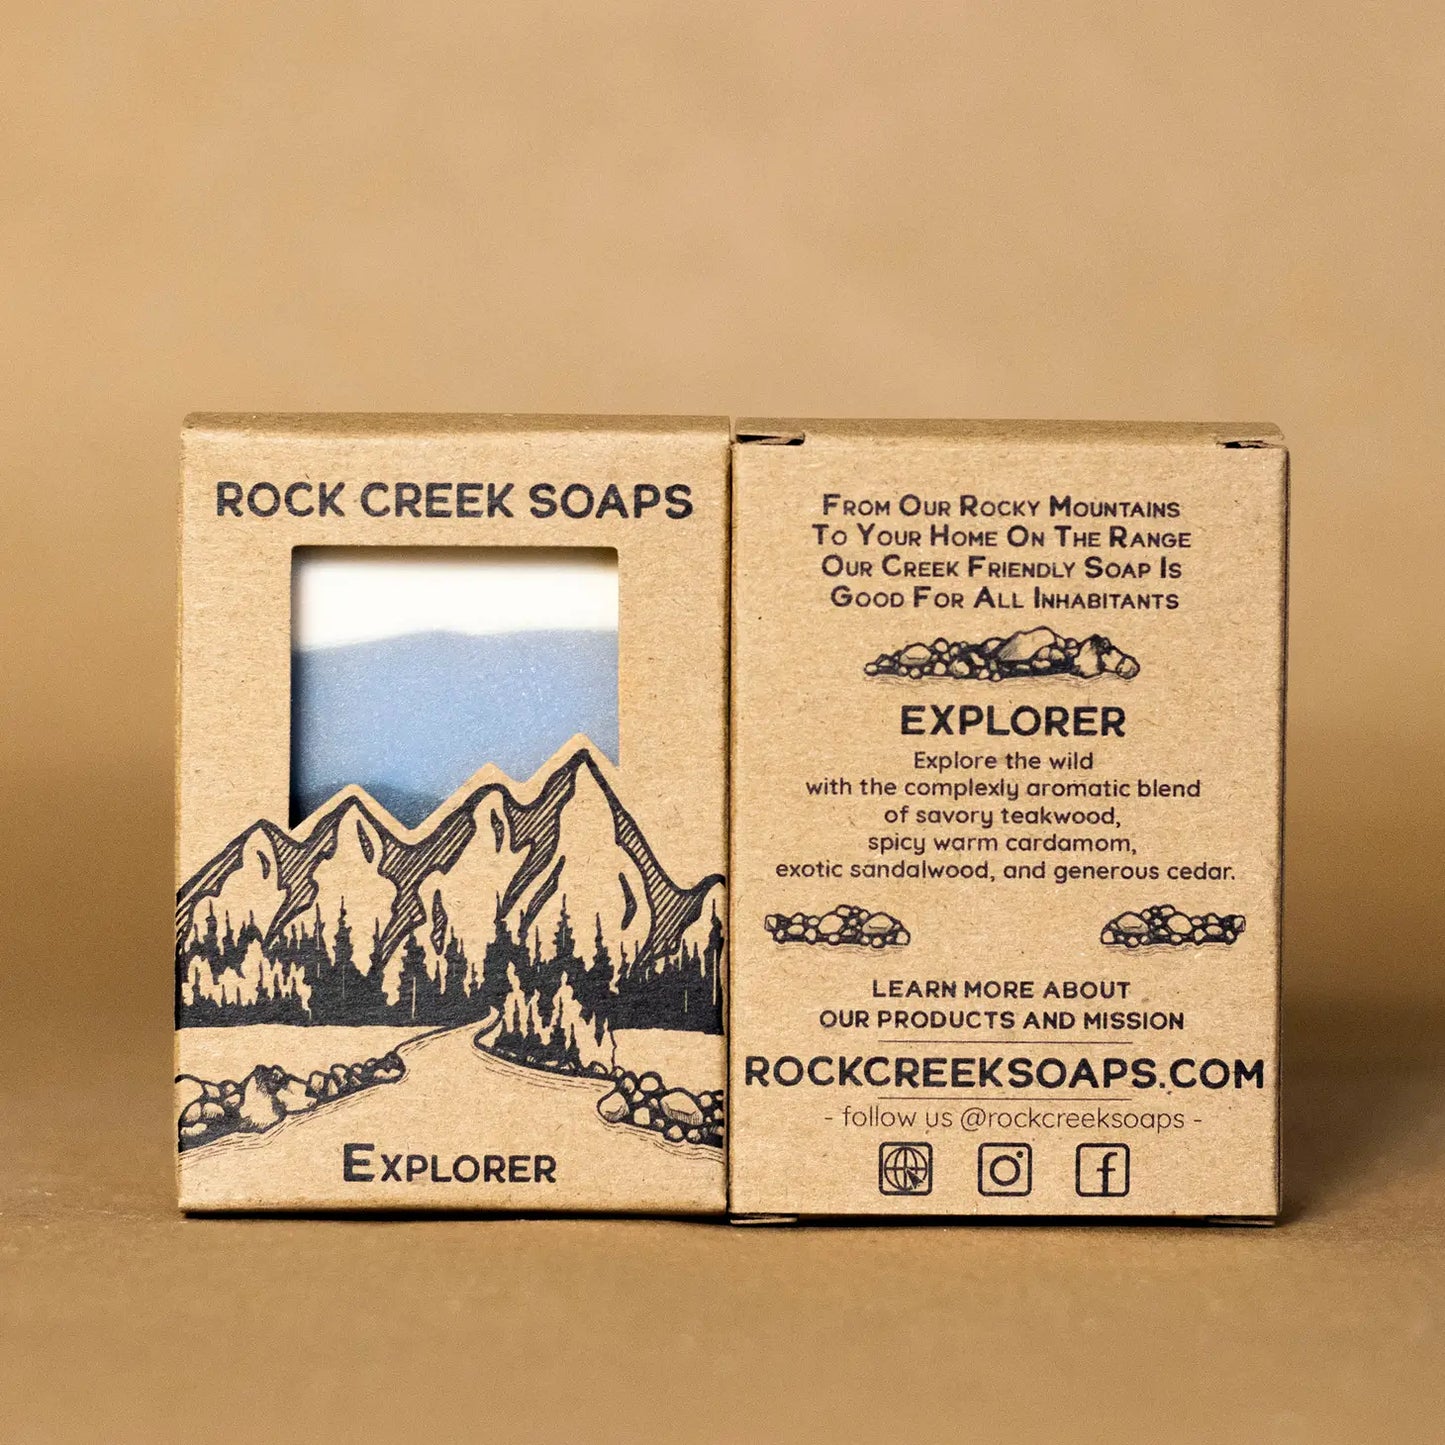 Rock Creek Soaps - Explorer | Bar Soap